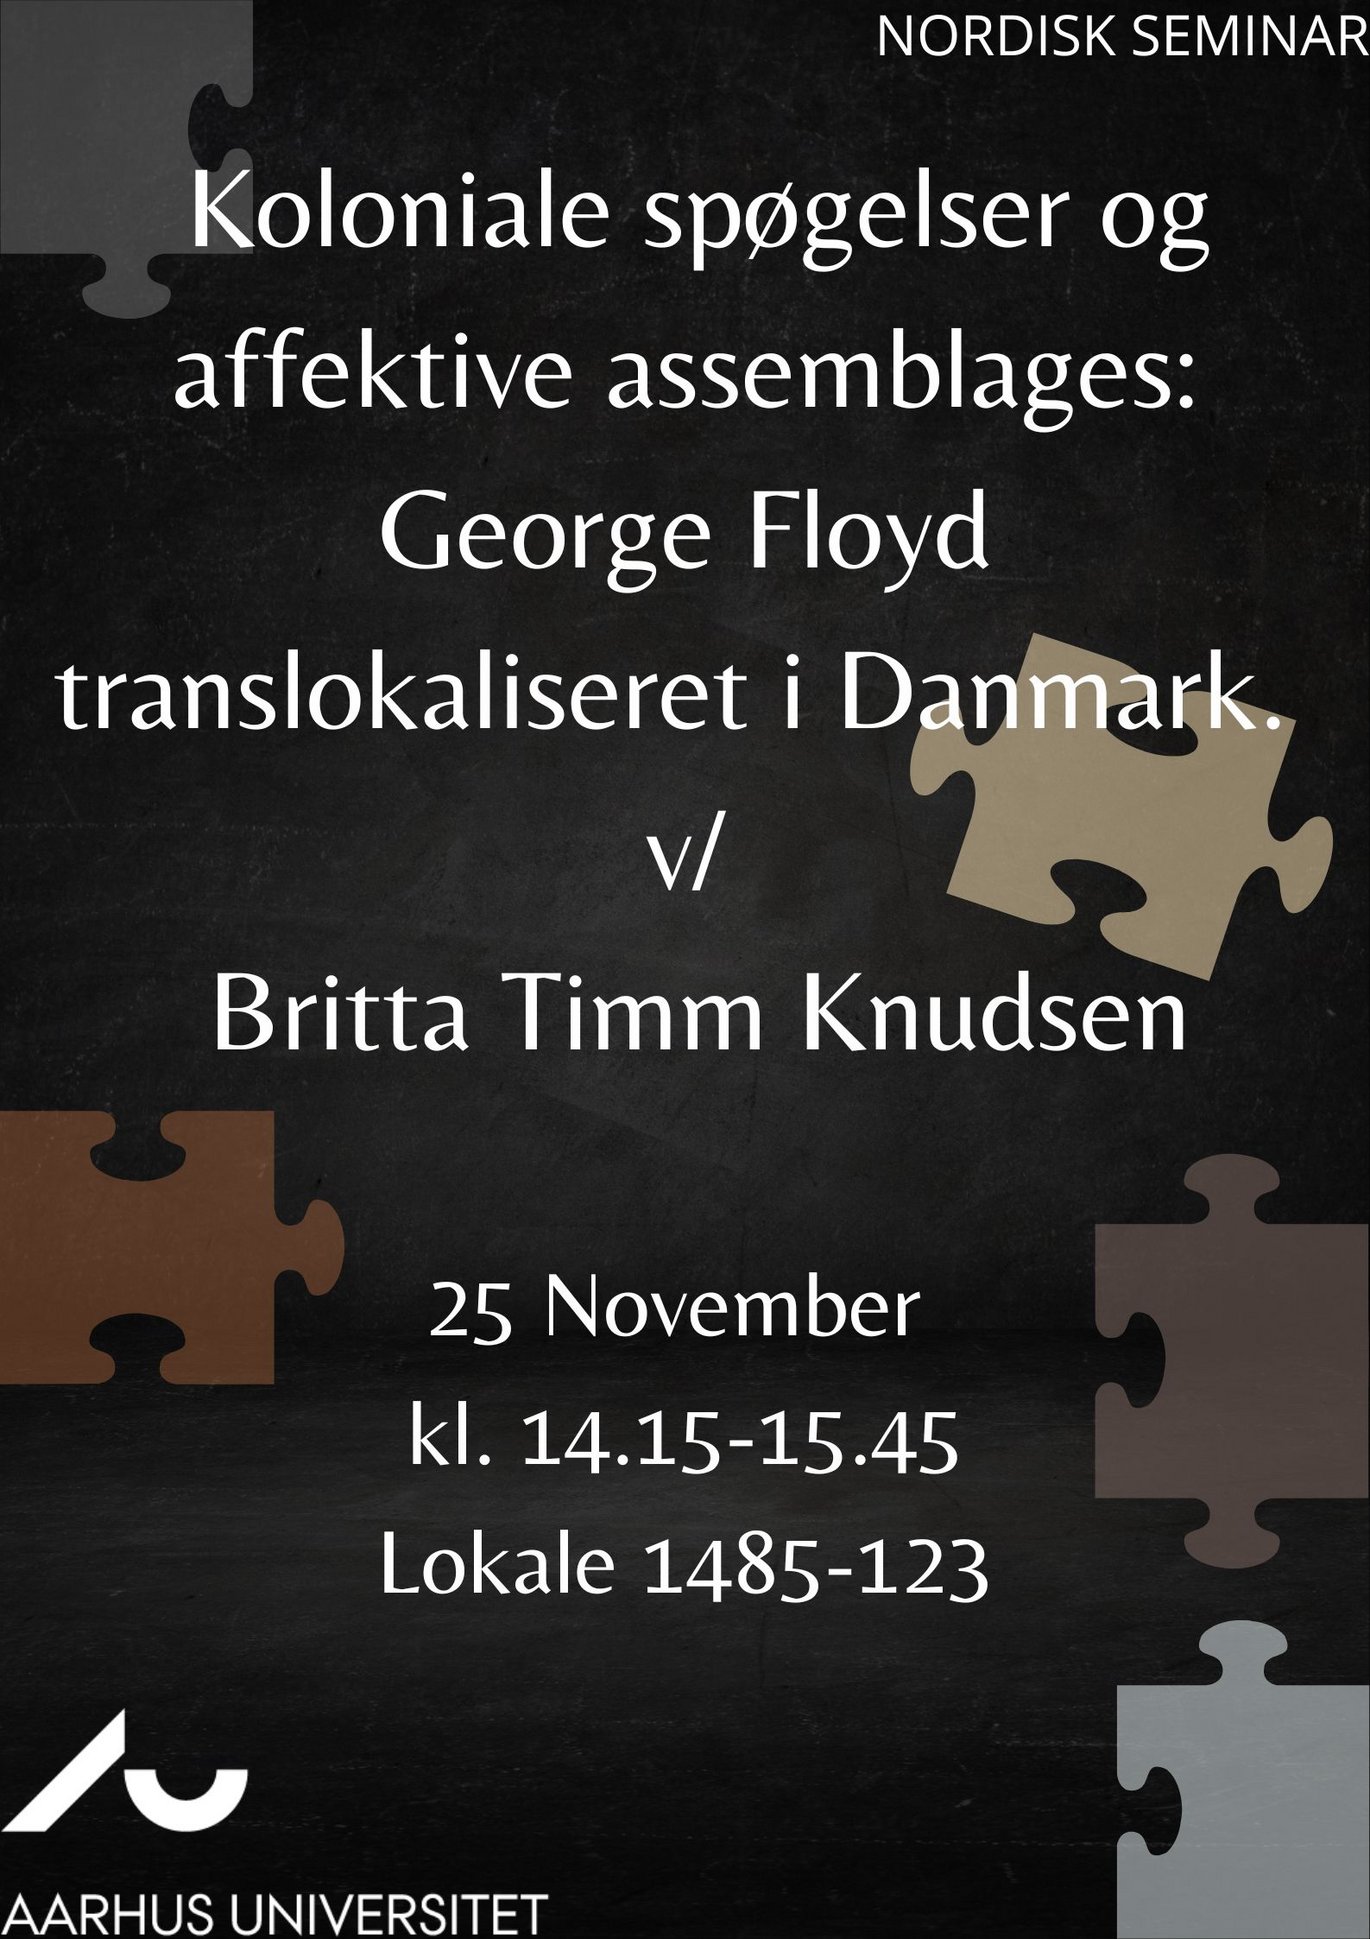 Plakat: Koloniale spøgelser og affektive assemblages: George Floyd translokaliseret i Danmark. v/ Britta Timm Knudsen. 25. november, kl. 14:15-15:45. Lokale 1485-123.